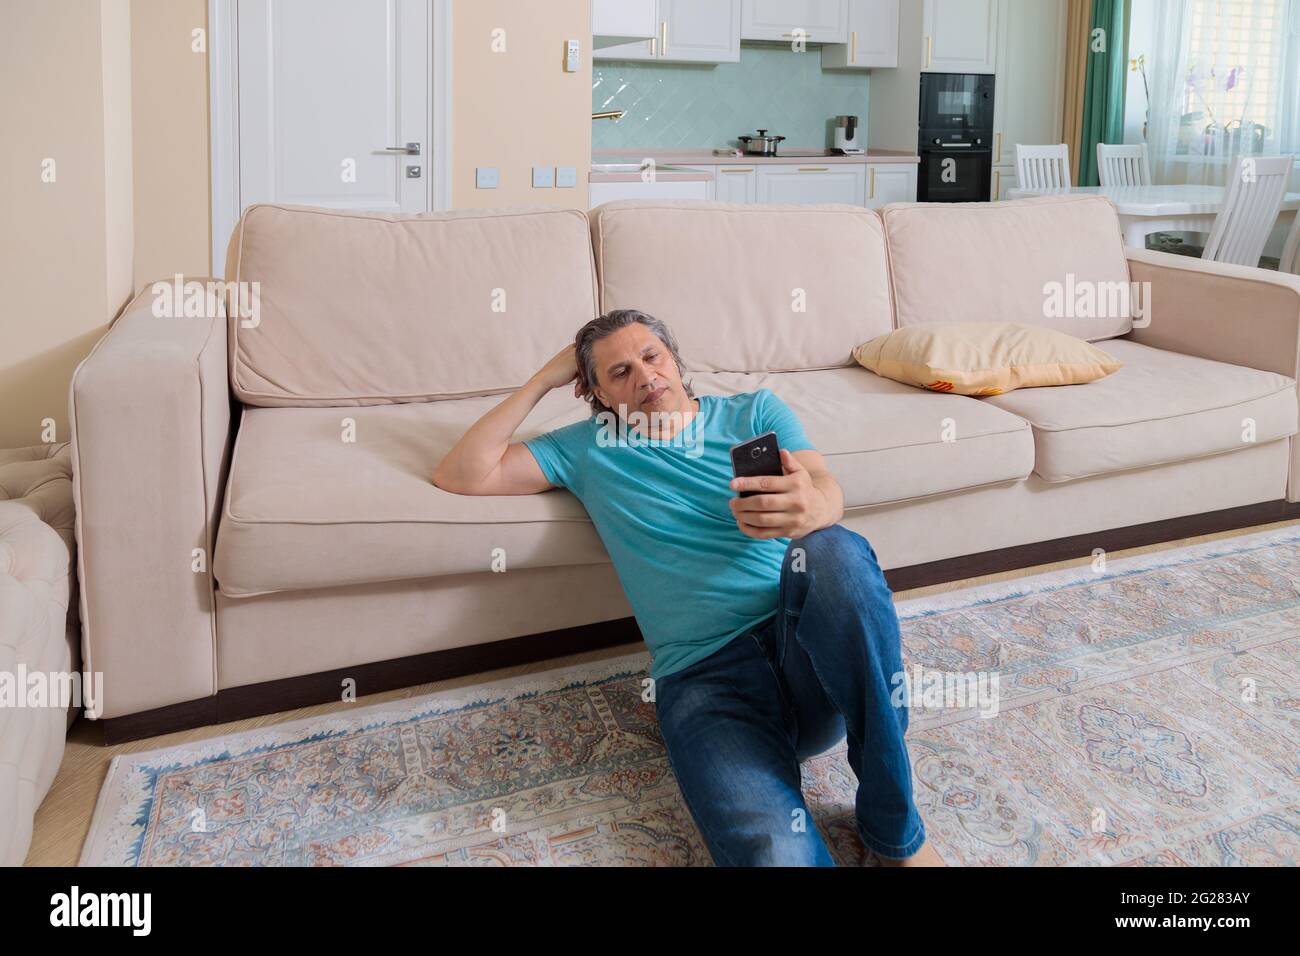 Ein erwachsener Mann durchsucht soziale Netzwerke auf einem Mobiltelefon, während er in einer Wohnung auf dem Boden sitzt. Stockfoto